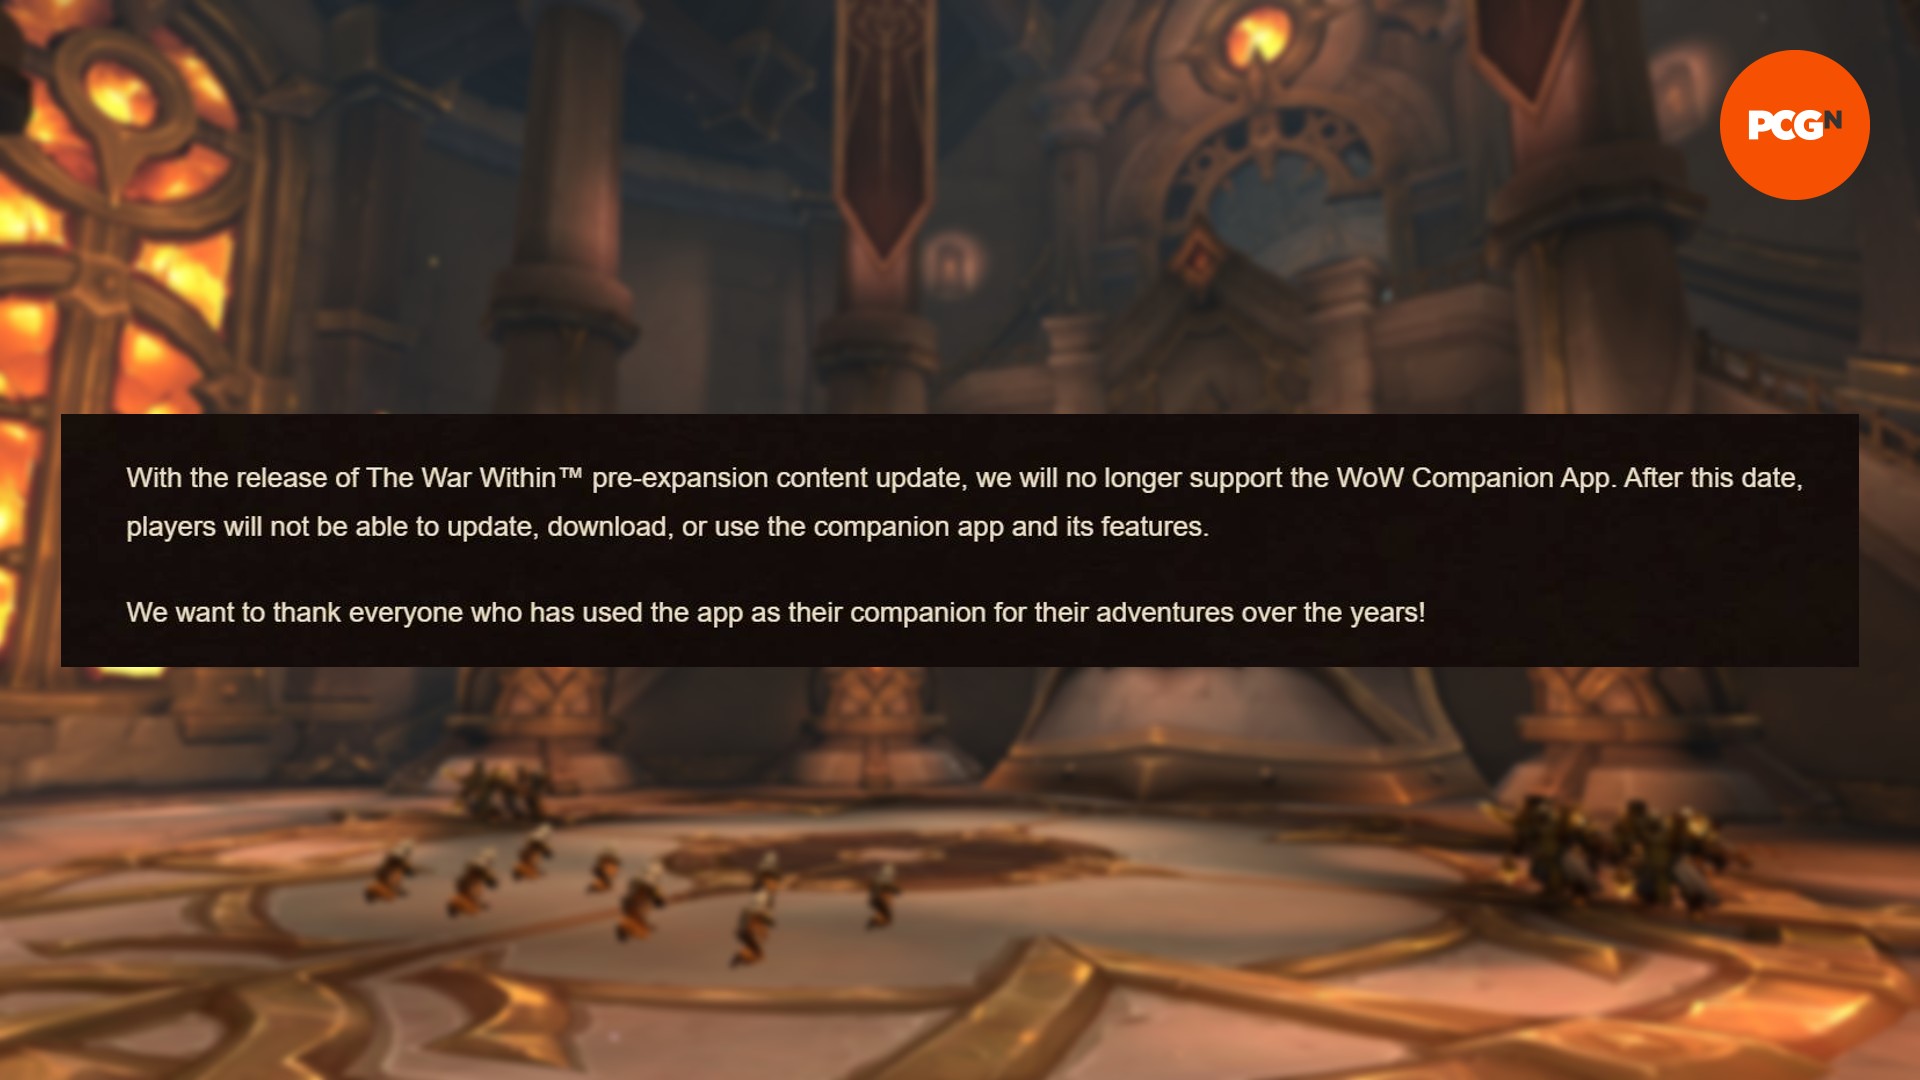 WoW The War Within dà il via a uno dei componenti aggiuntivi più trascurati di Blizzard: un'immagine dell'annuncio di Blizzard che l'app WoW Companion verrà ritirata in uno sfondo simile a una chiesa.